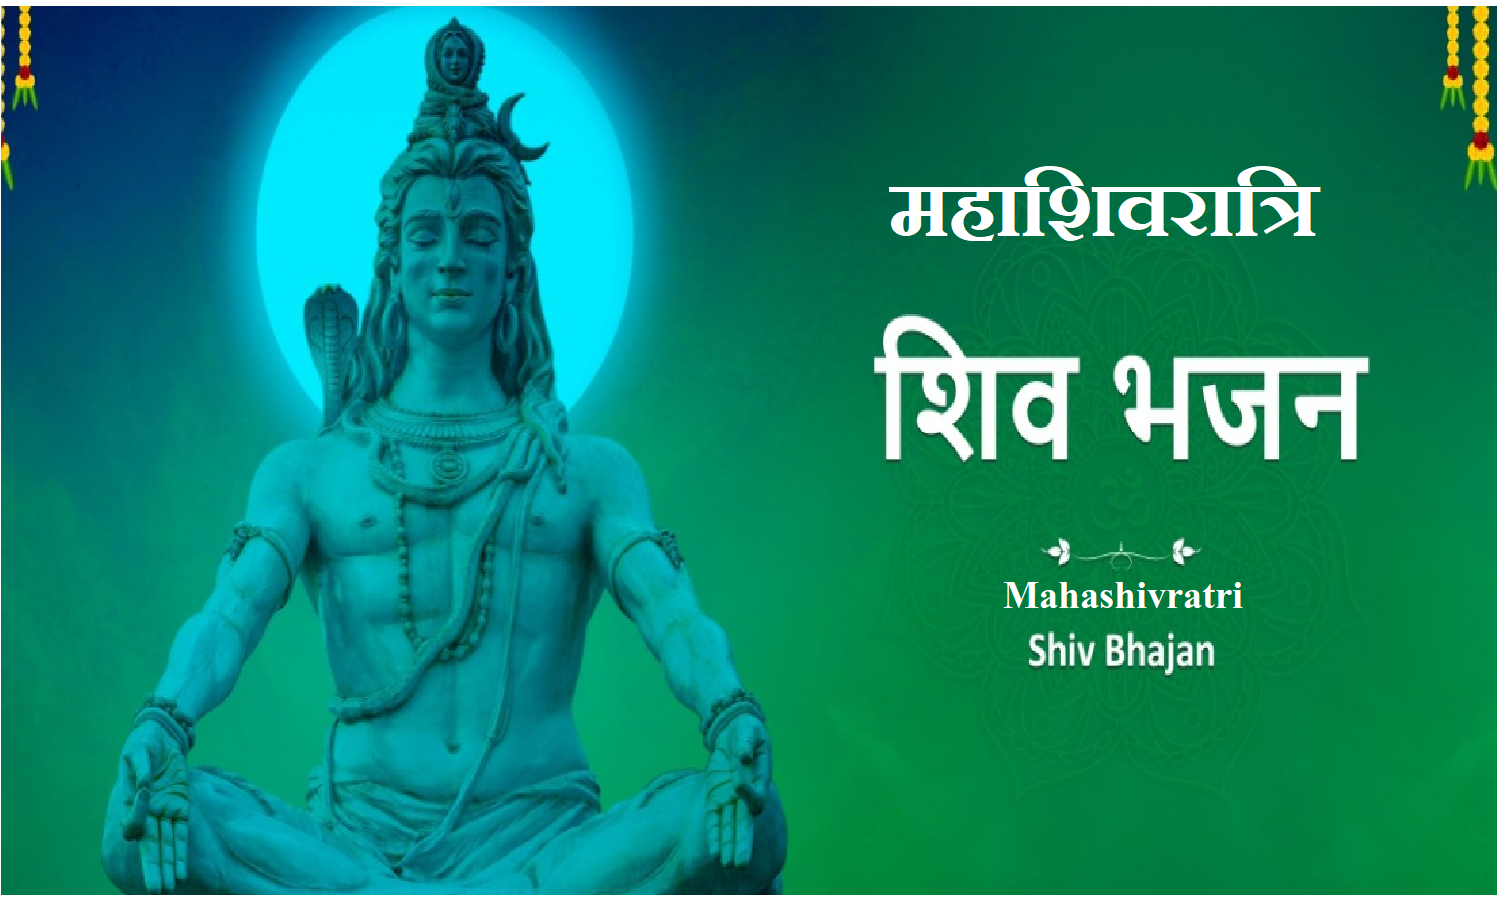 Maha Shivratri Bhojpuri Song: महाशिवरात्रि पर सुने भगवान शंकर के ये मशहूर भोजपुरी गाने